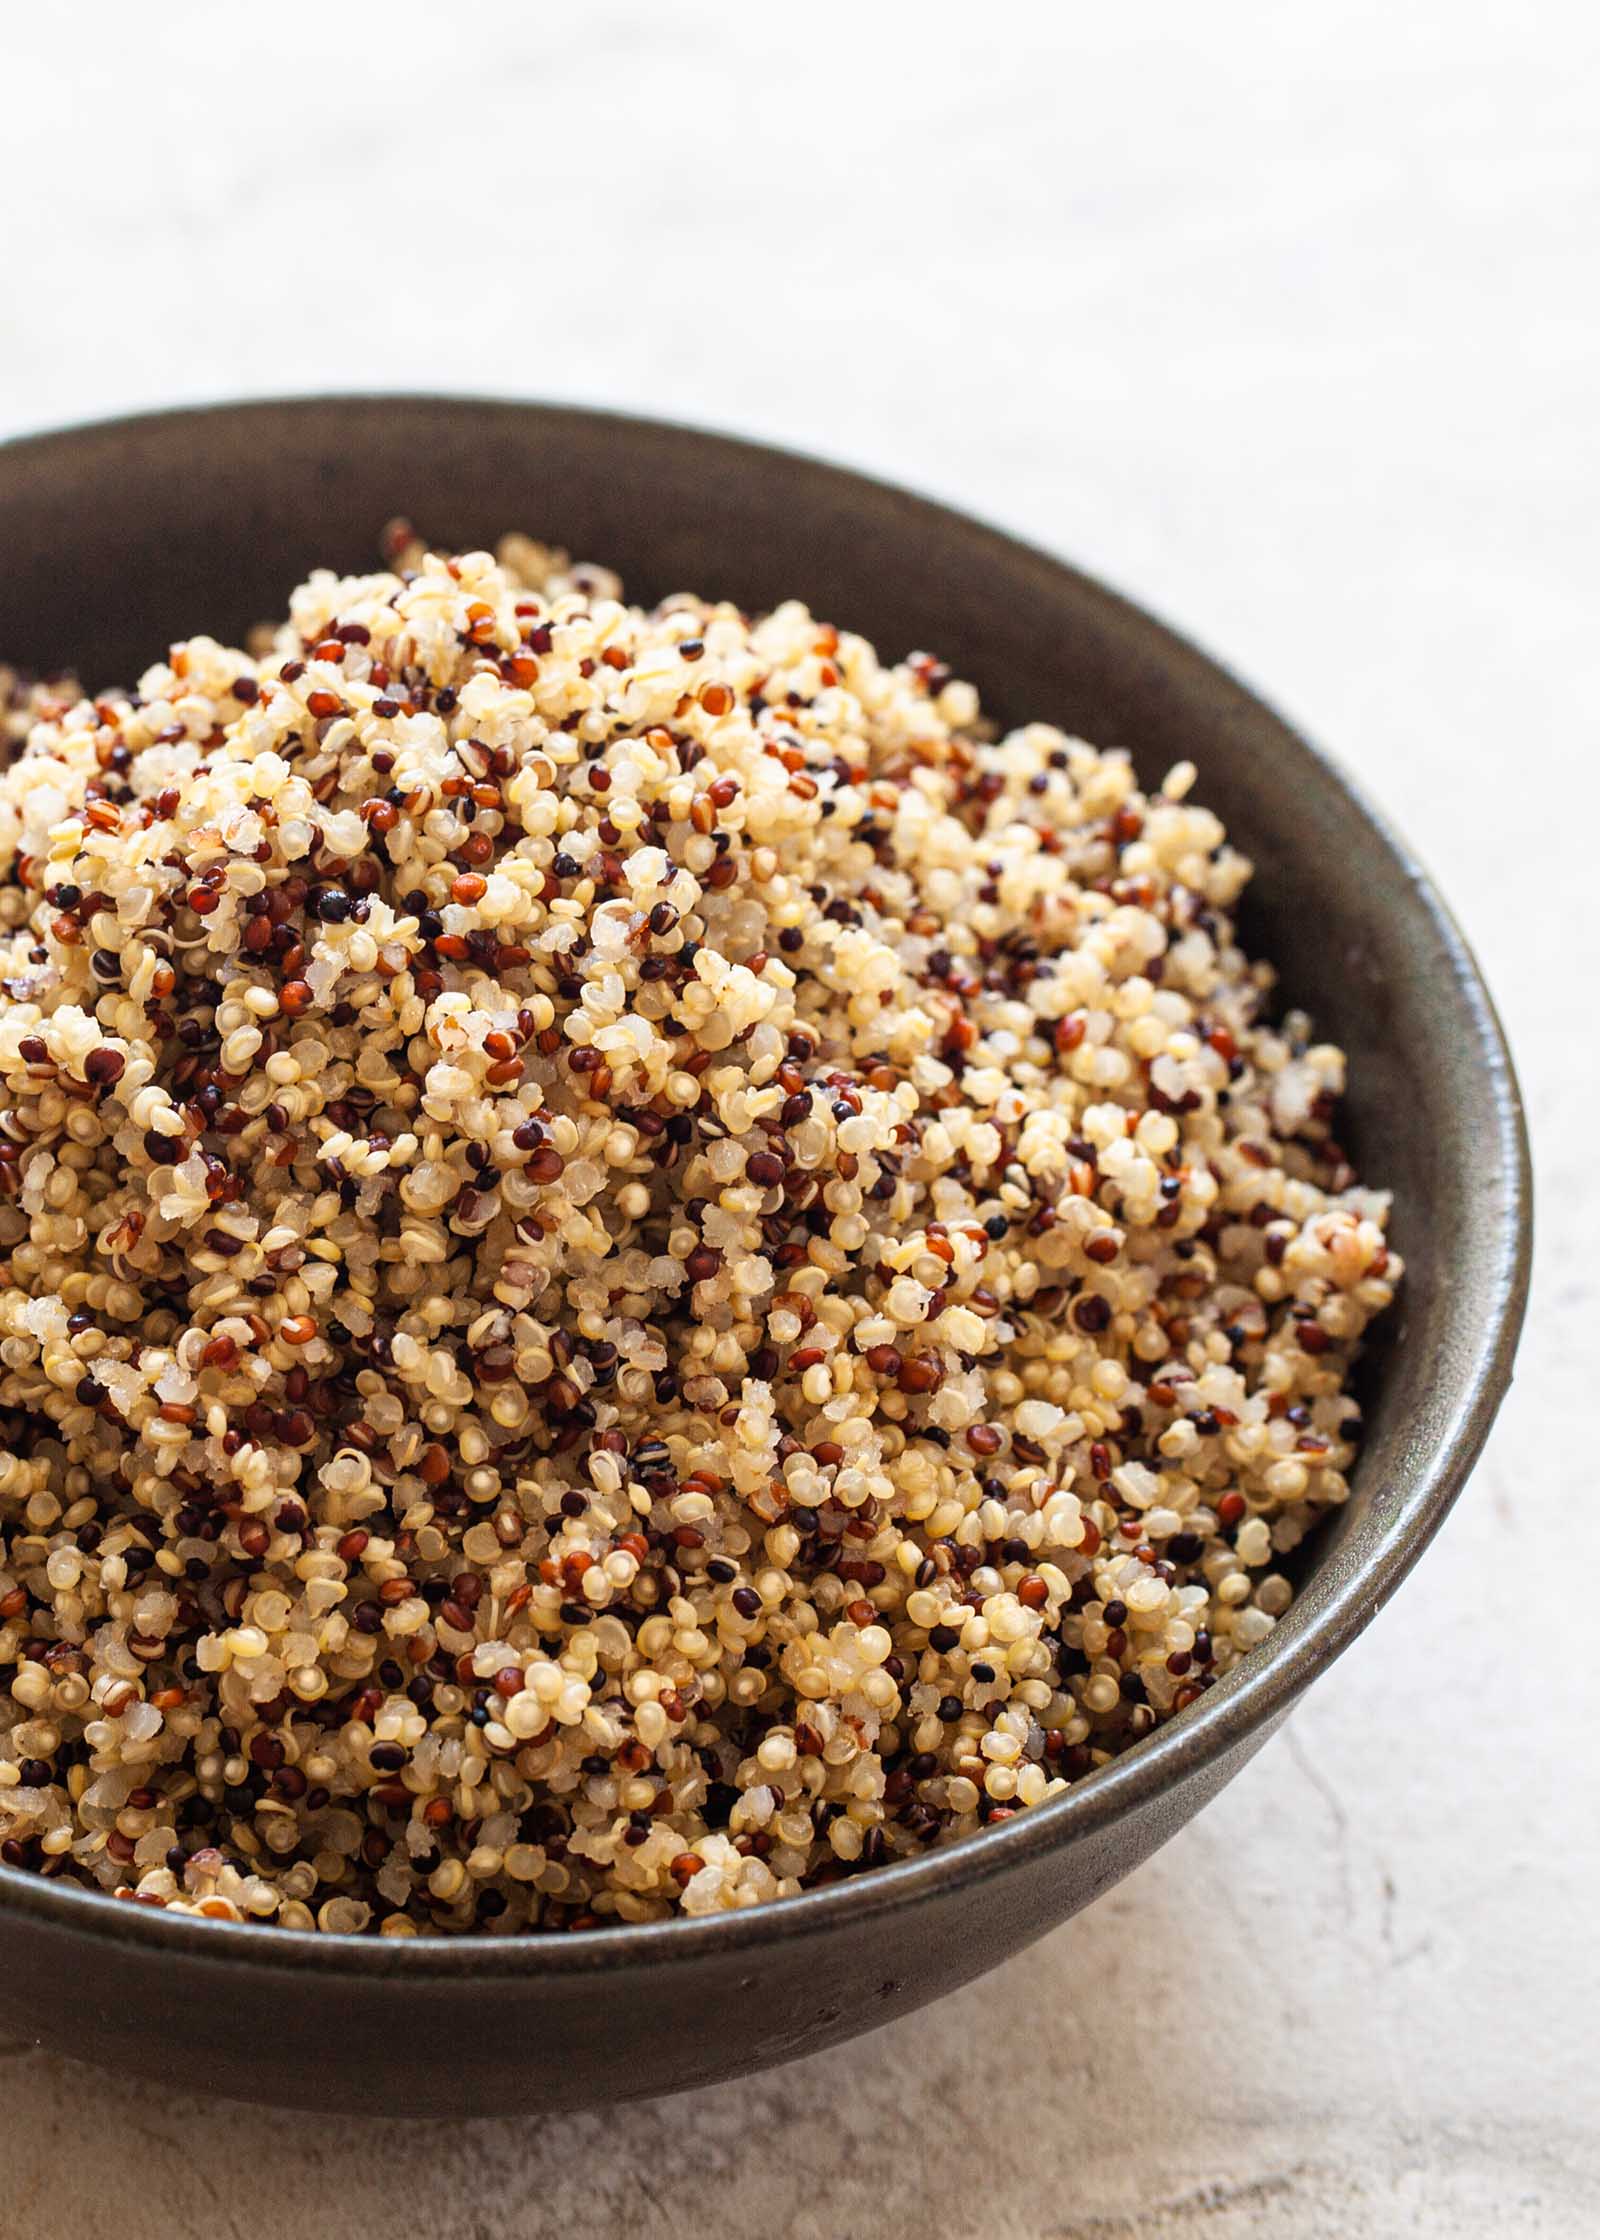 Homemade quinoa recipe in a dark bowl.